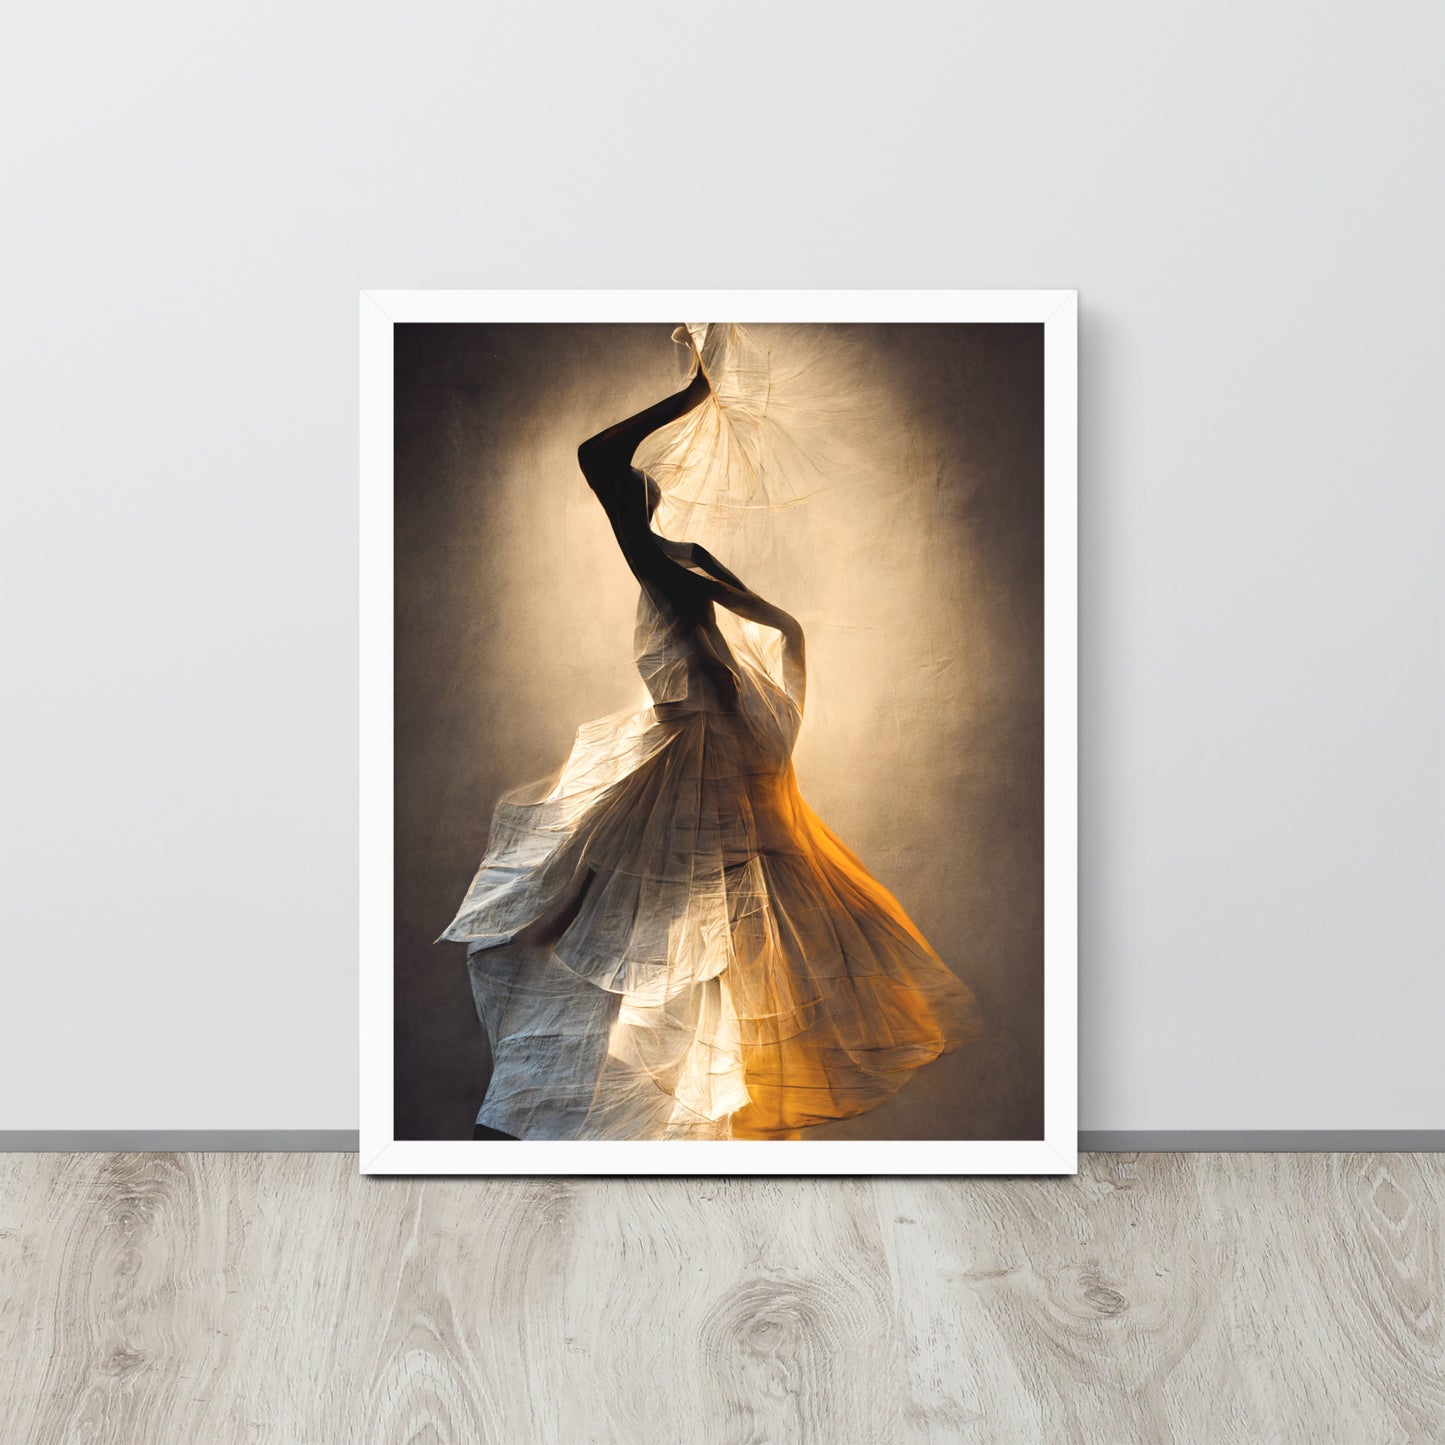 Framed photo paper poster: "Dancer in paper"